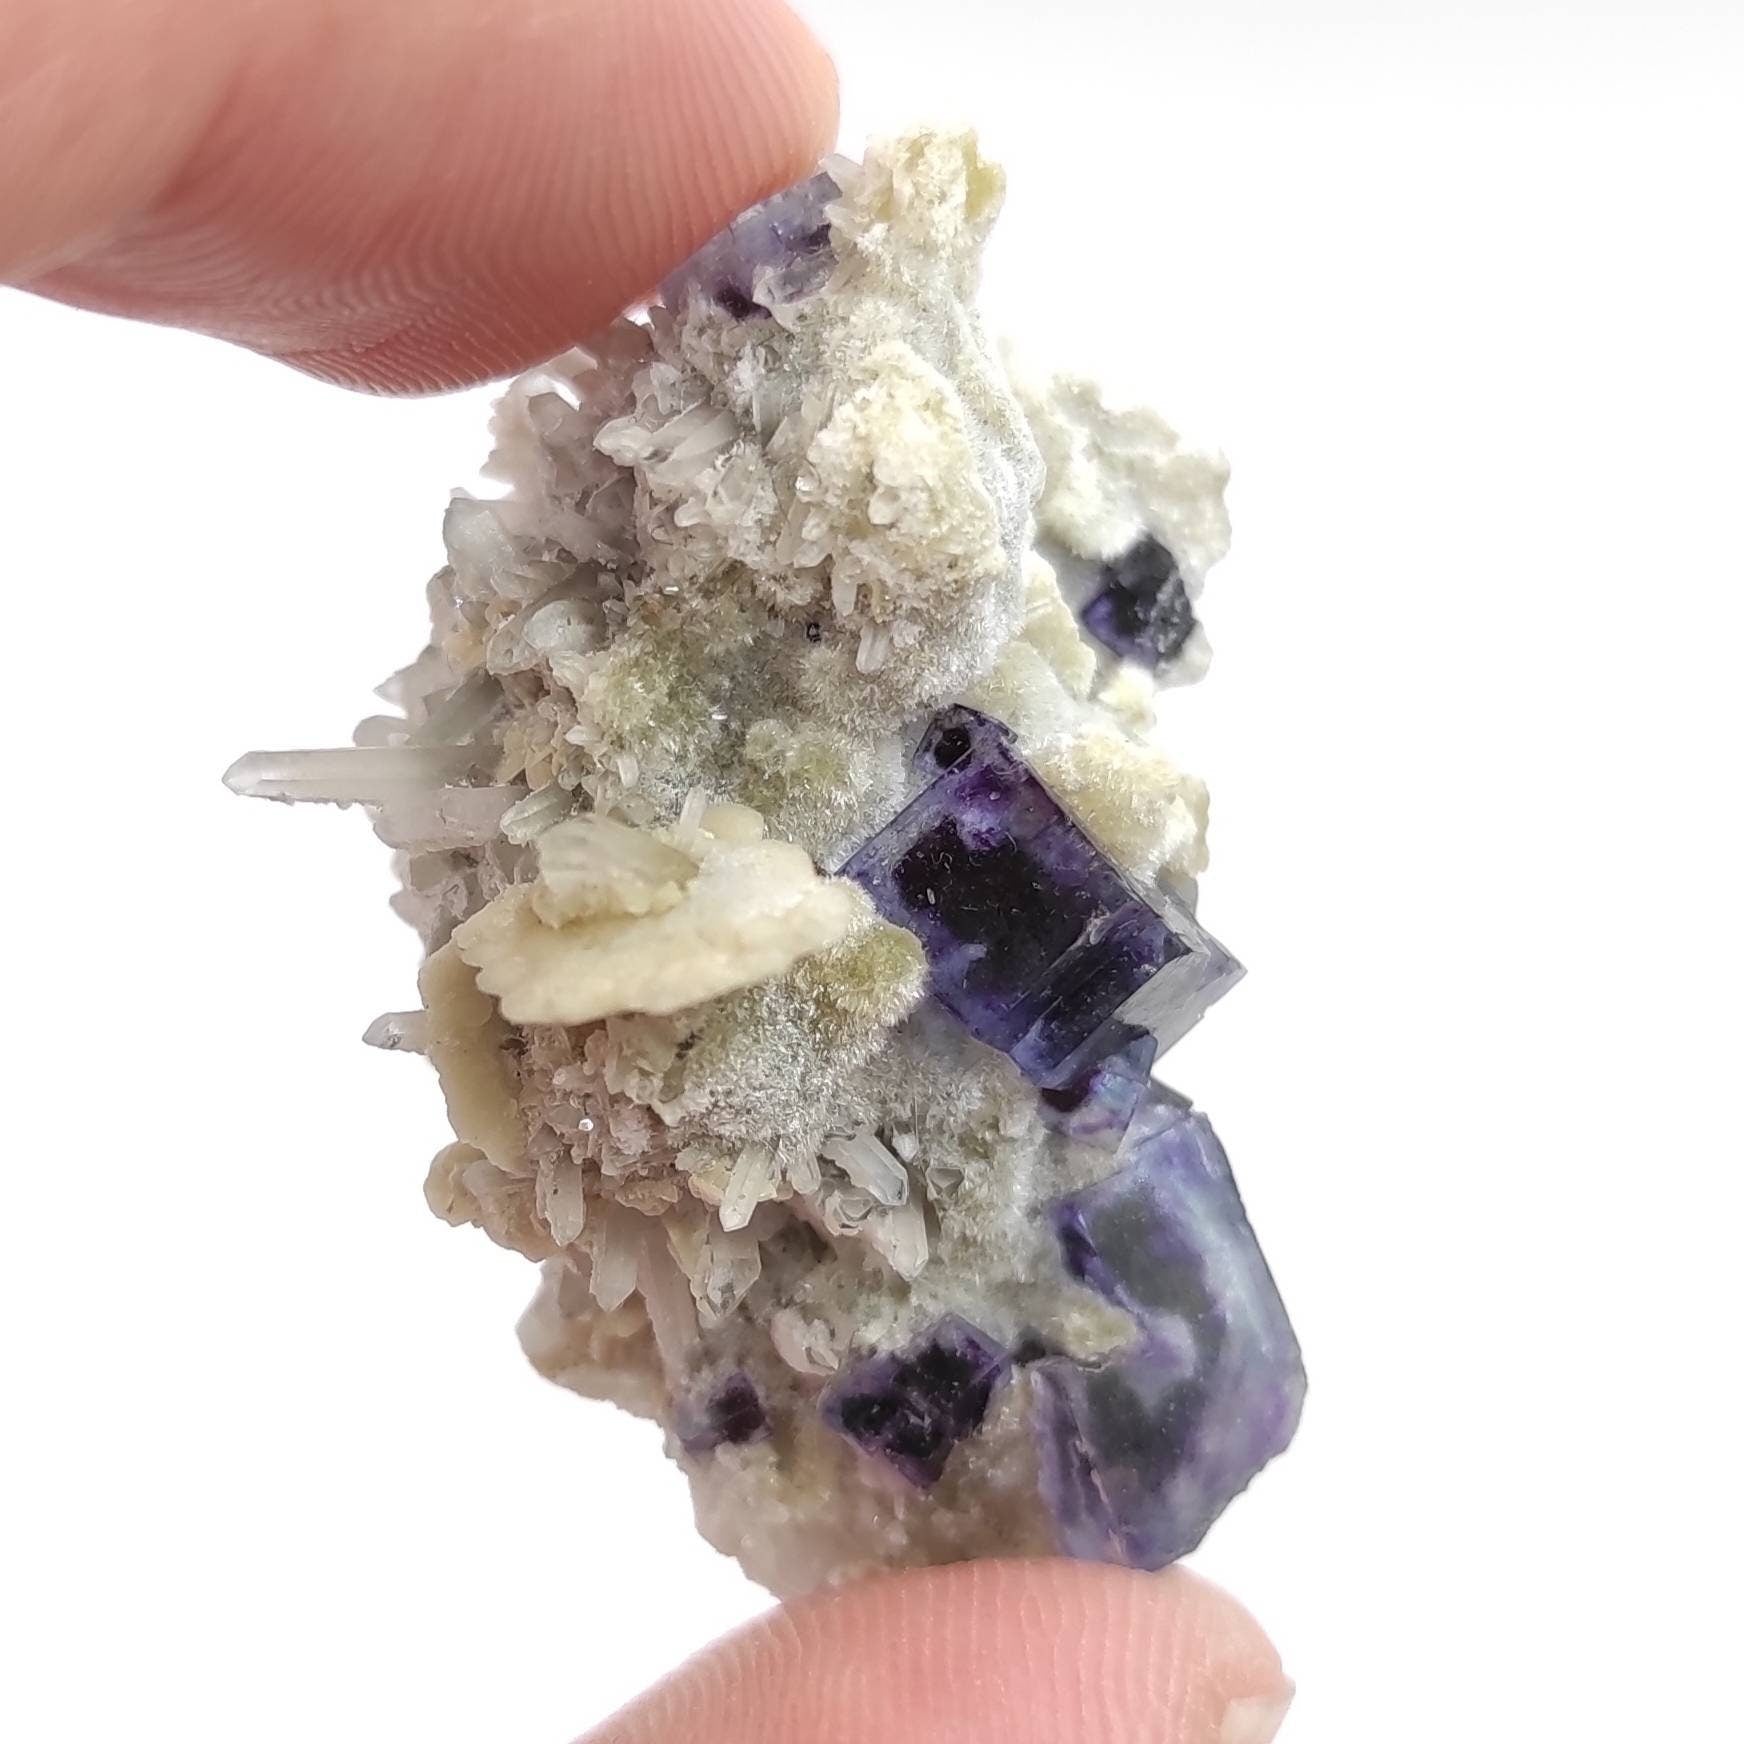 13g Mini Purple & Blue Fluorite Specimen - Inner Mongolia Fluorite Crystal - Natural Fluorite Crystal - Purple Crystal - Mineral Specimen